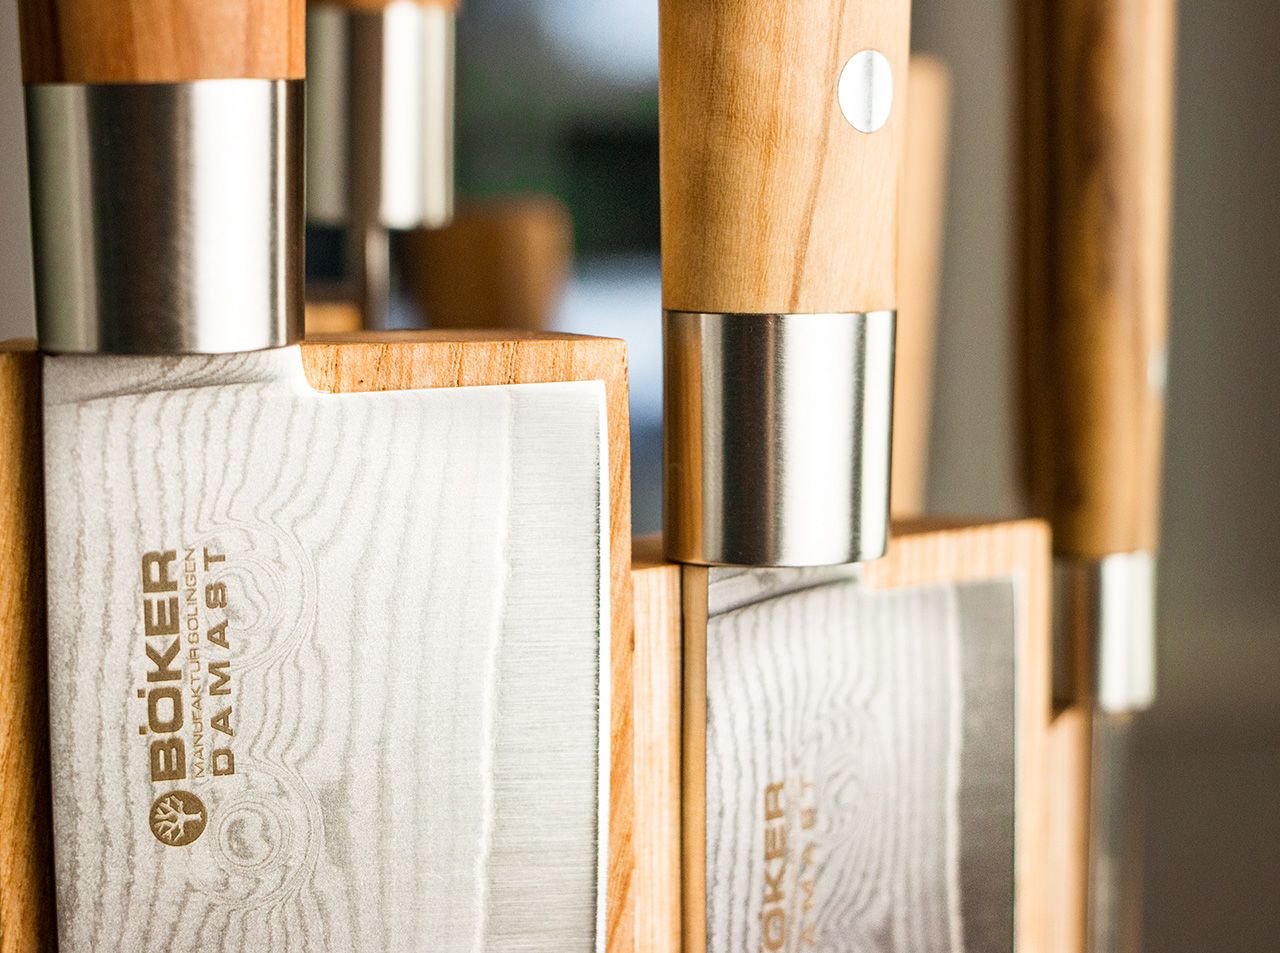 Set de couteaux 7 Pcs Damas Olive avec support magnétique en bois de frêne  - Boker Magnum